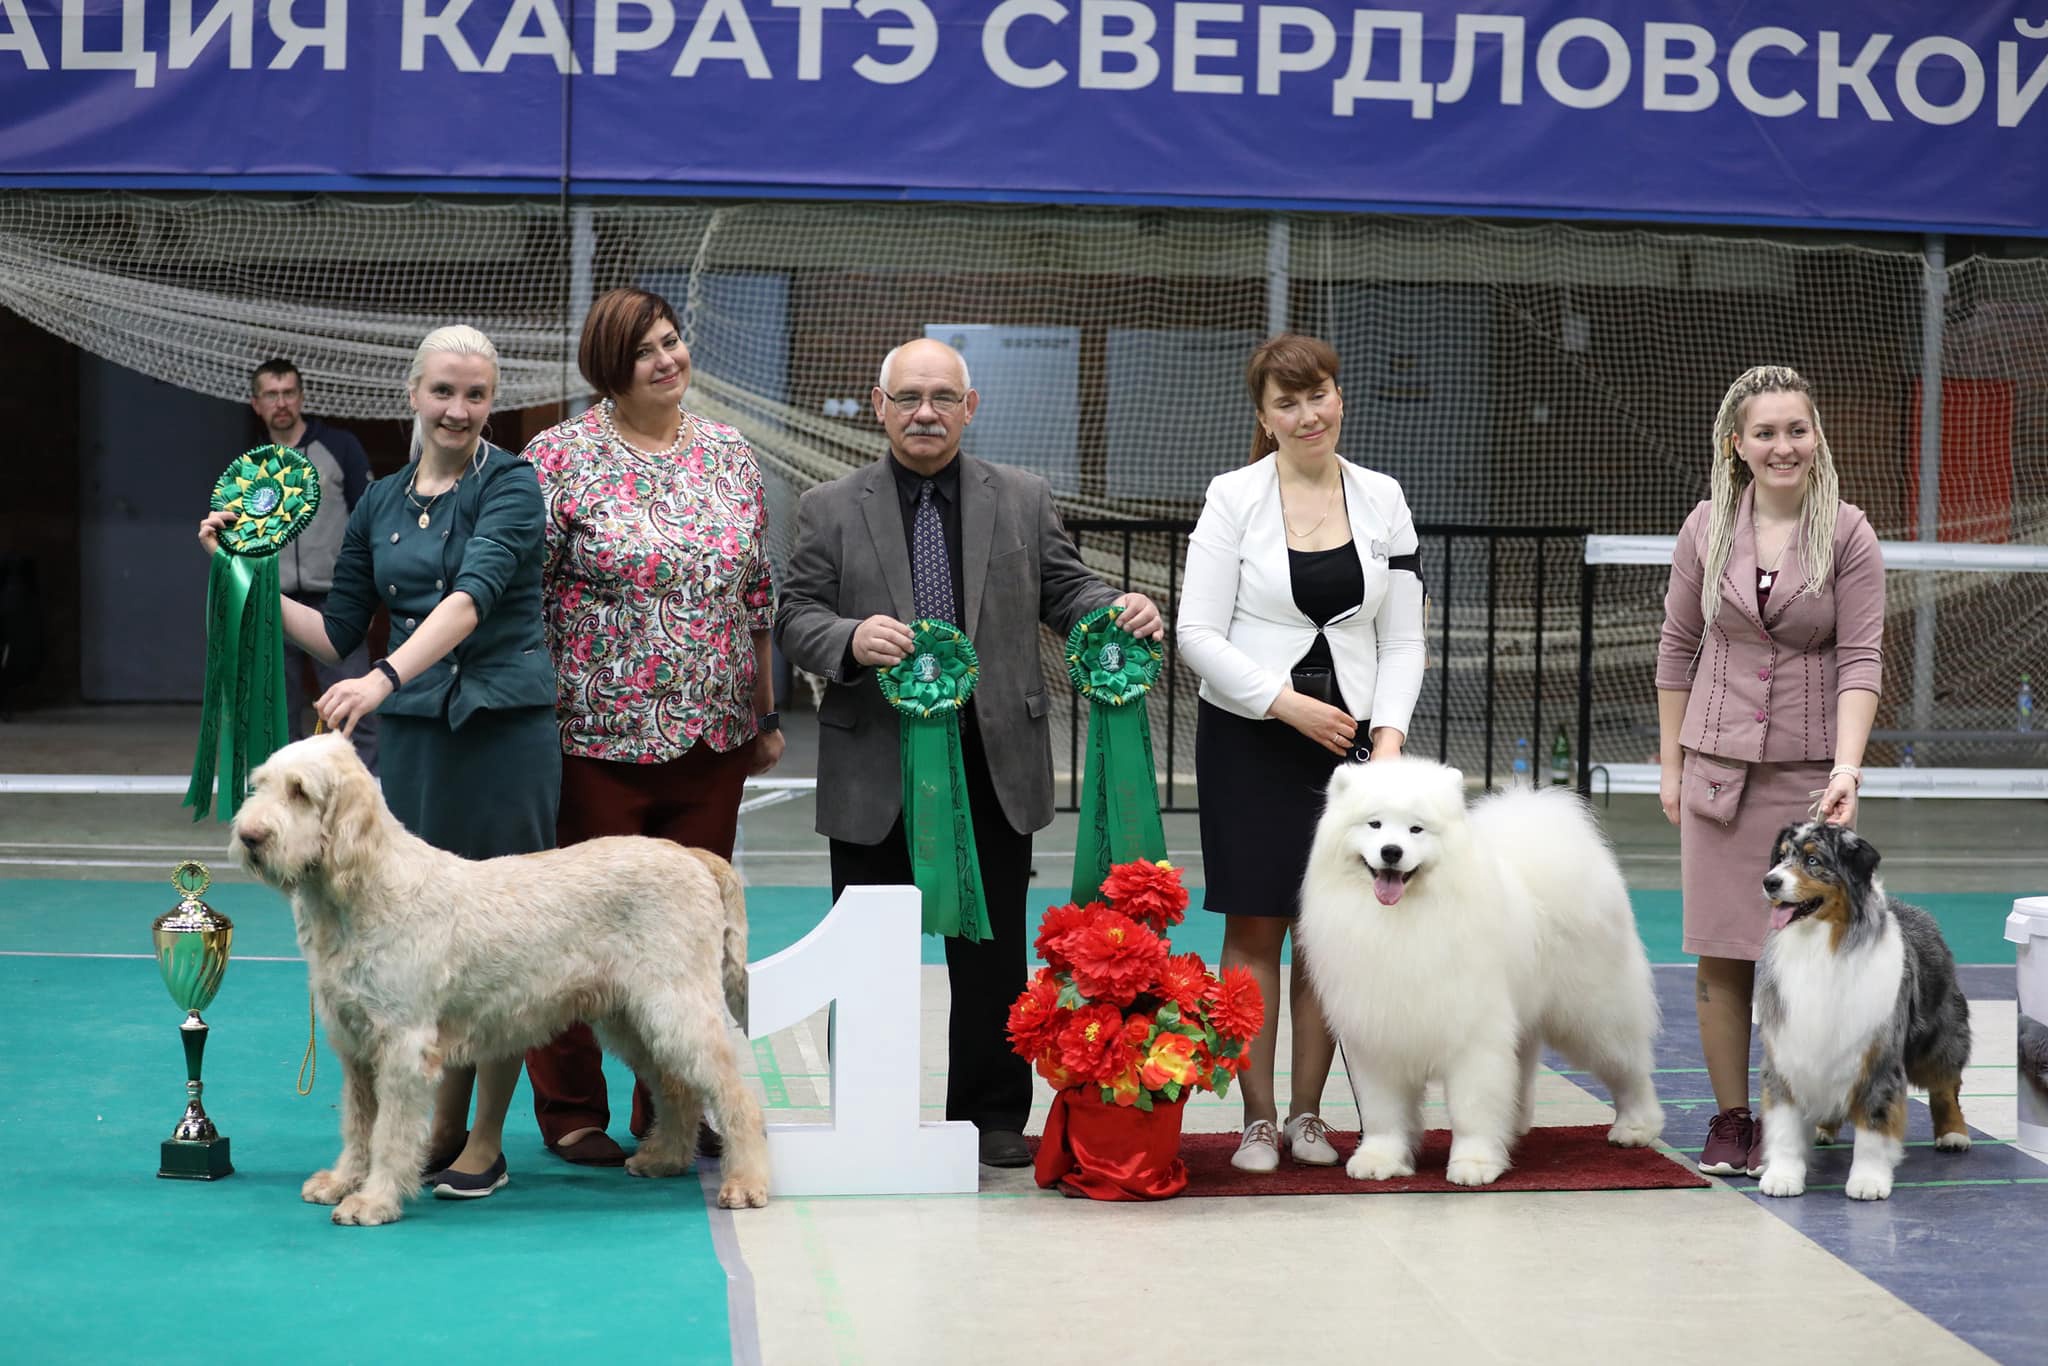 National dog show CAС "CH RKF" / Всепородная выставка национального уровня CAC ЧРКФ с особым статусом